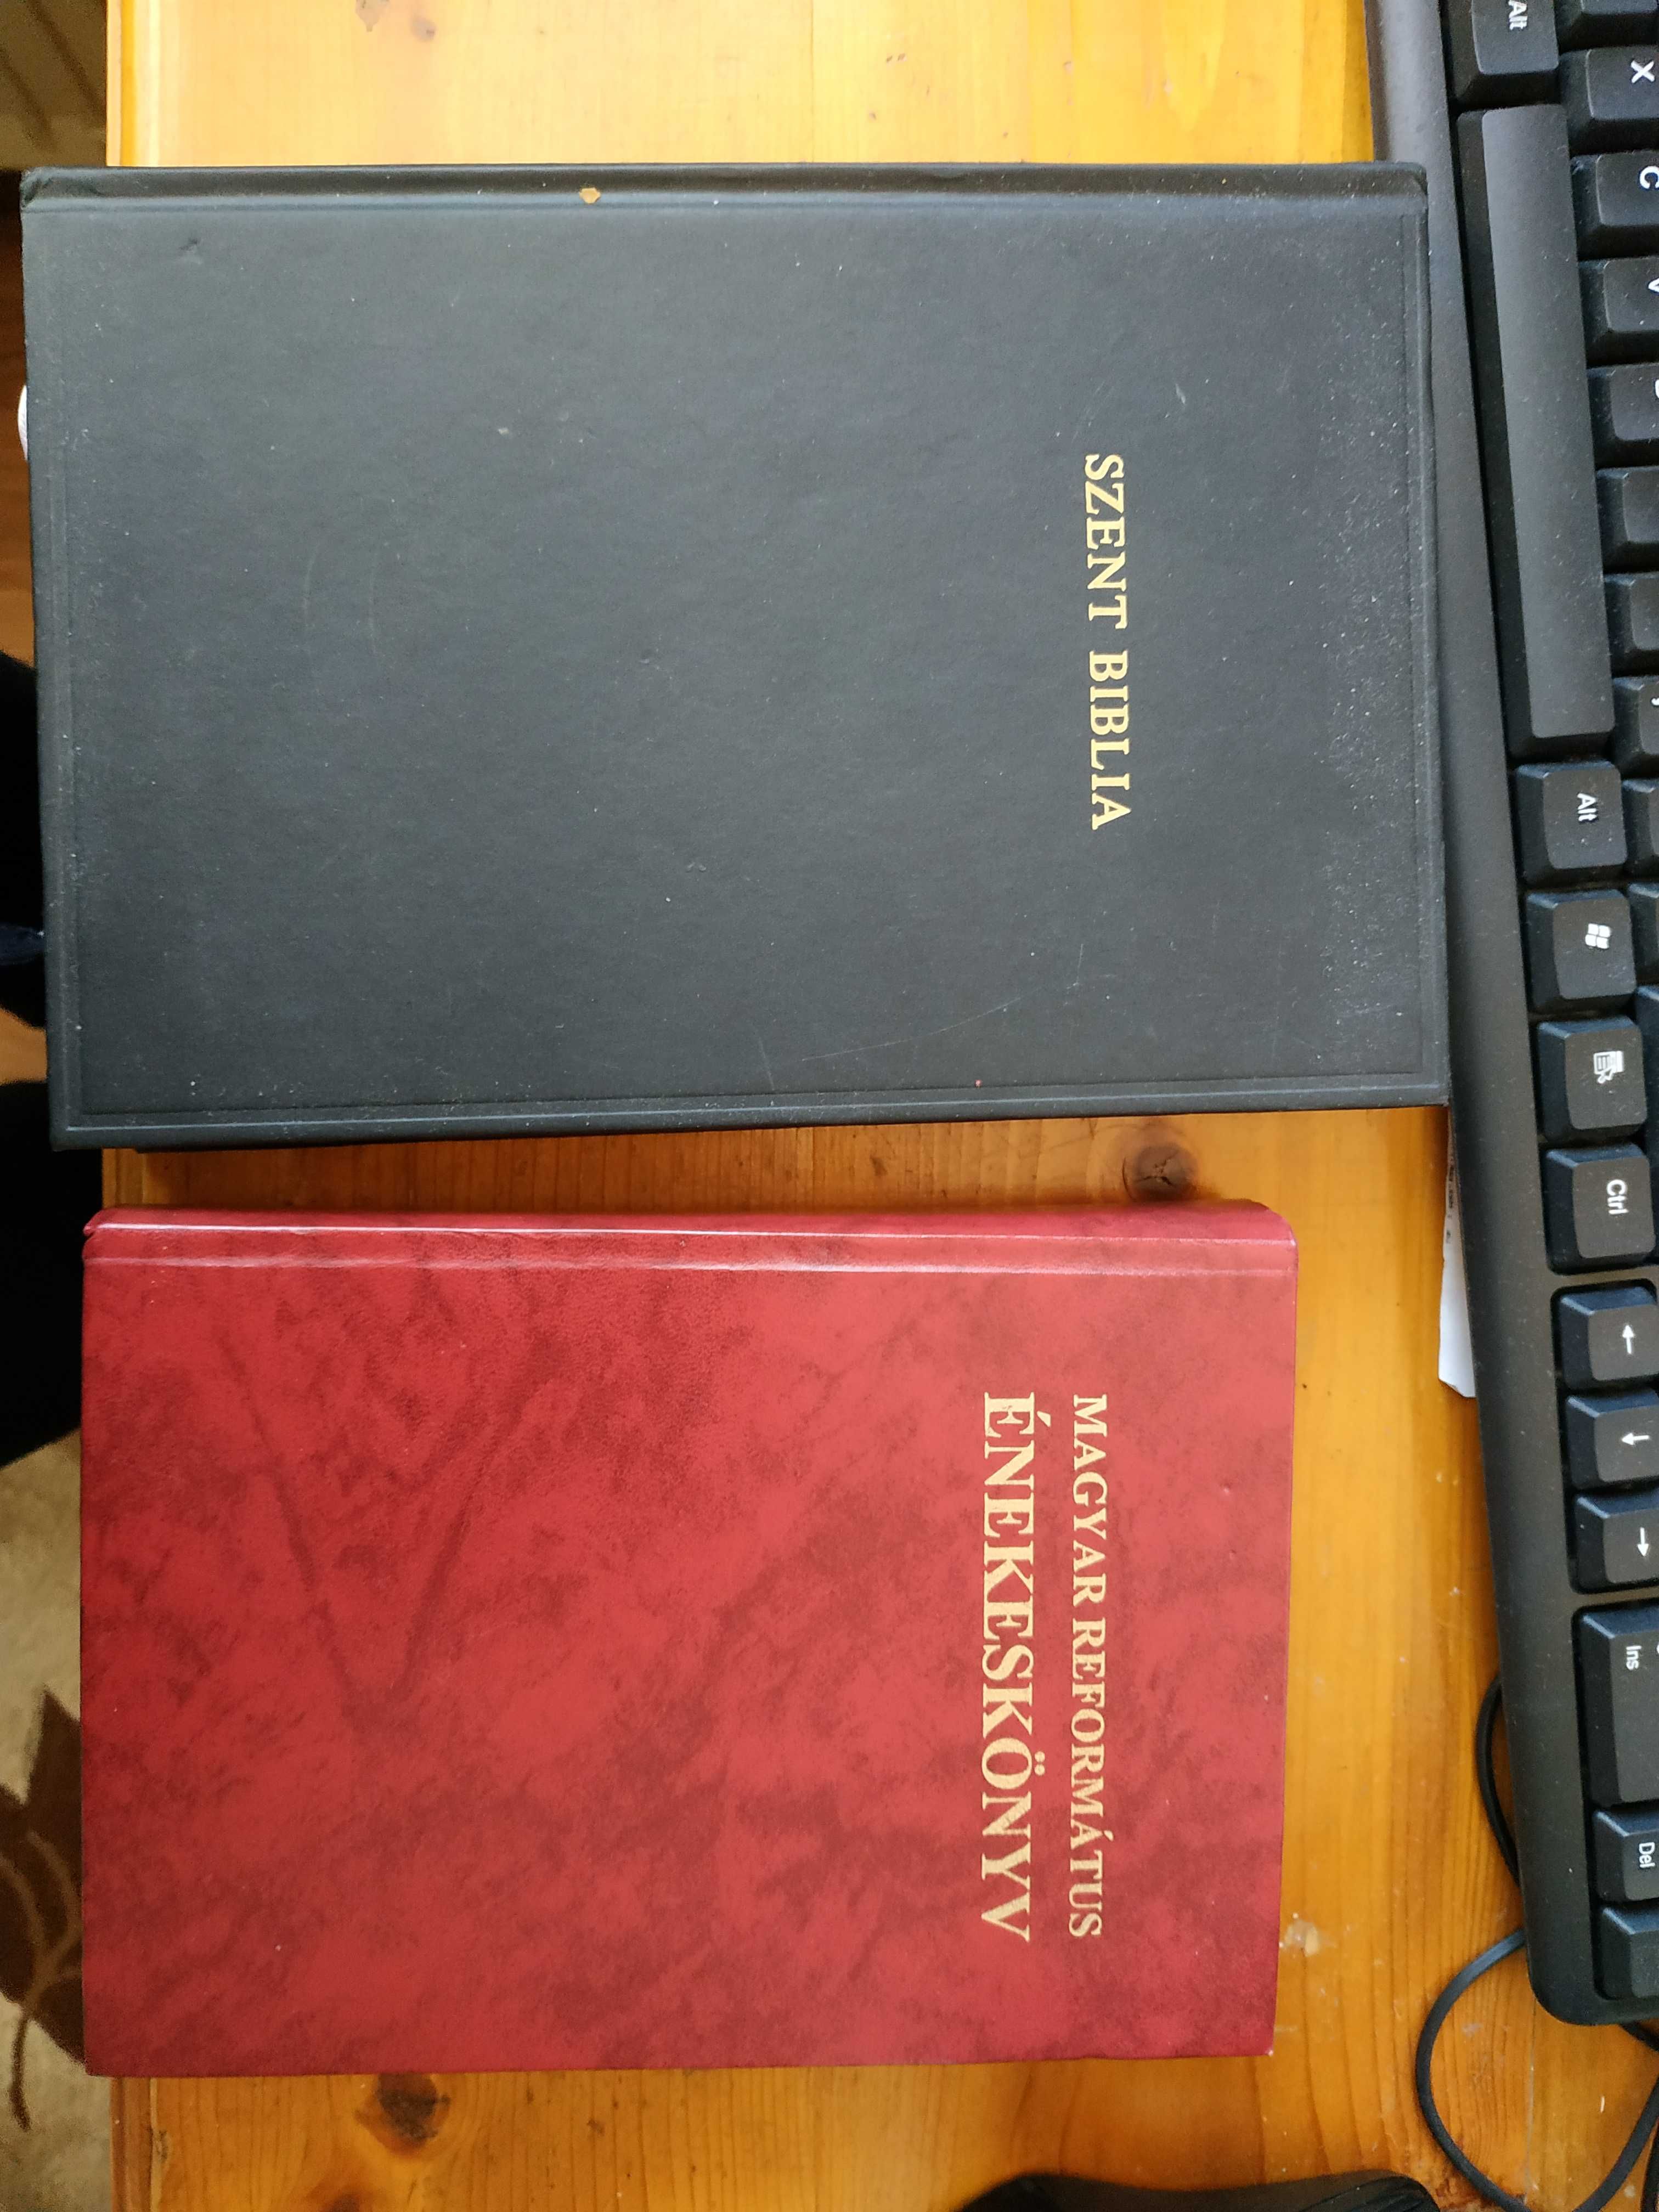 biblia reformată și carte de cântece în limba maghiară